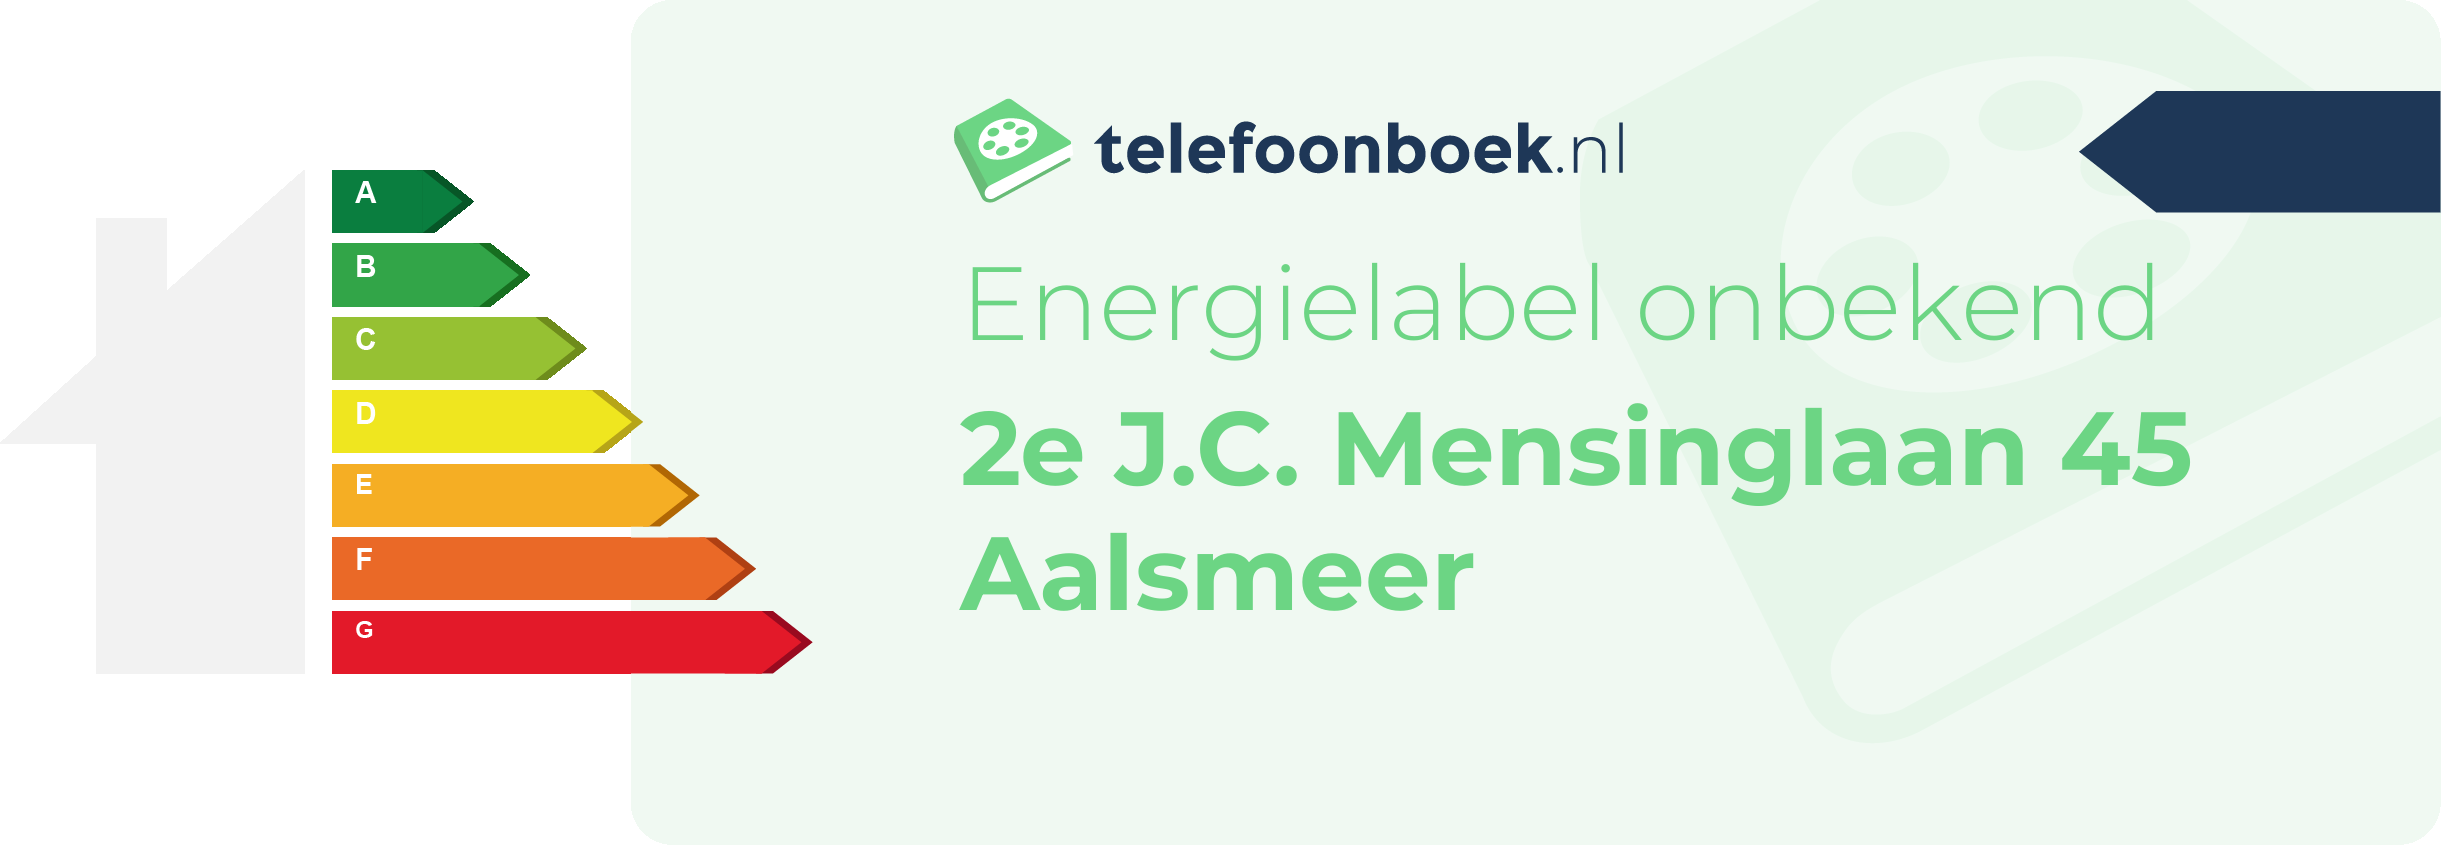 Energielabel 2e J.C. Mensinglaan 45 Aalsmeer